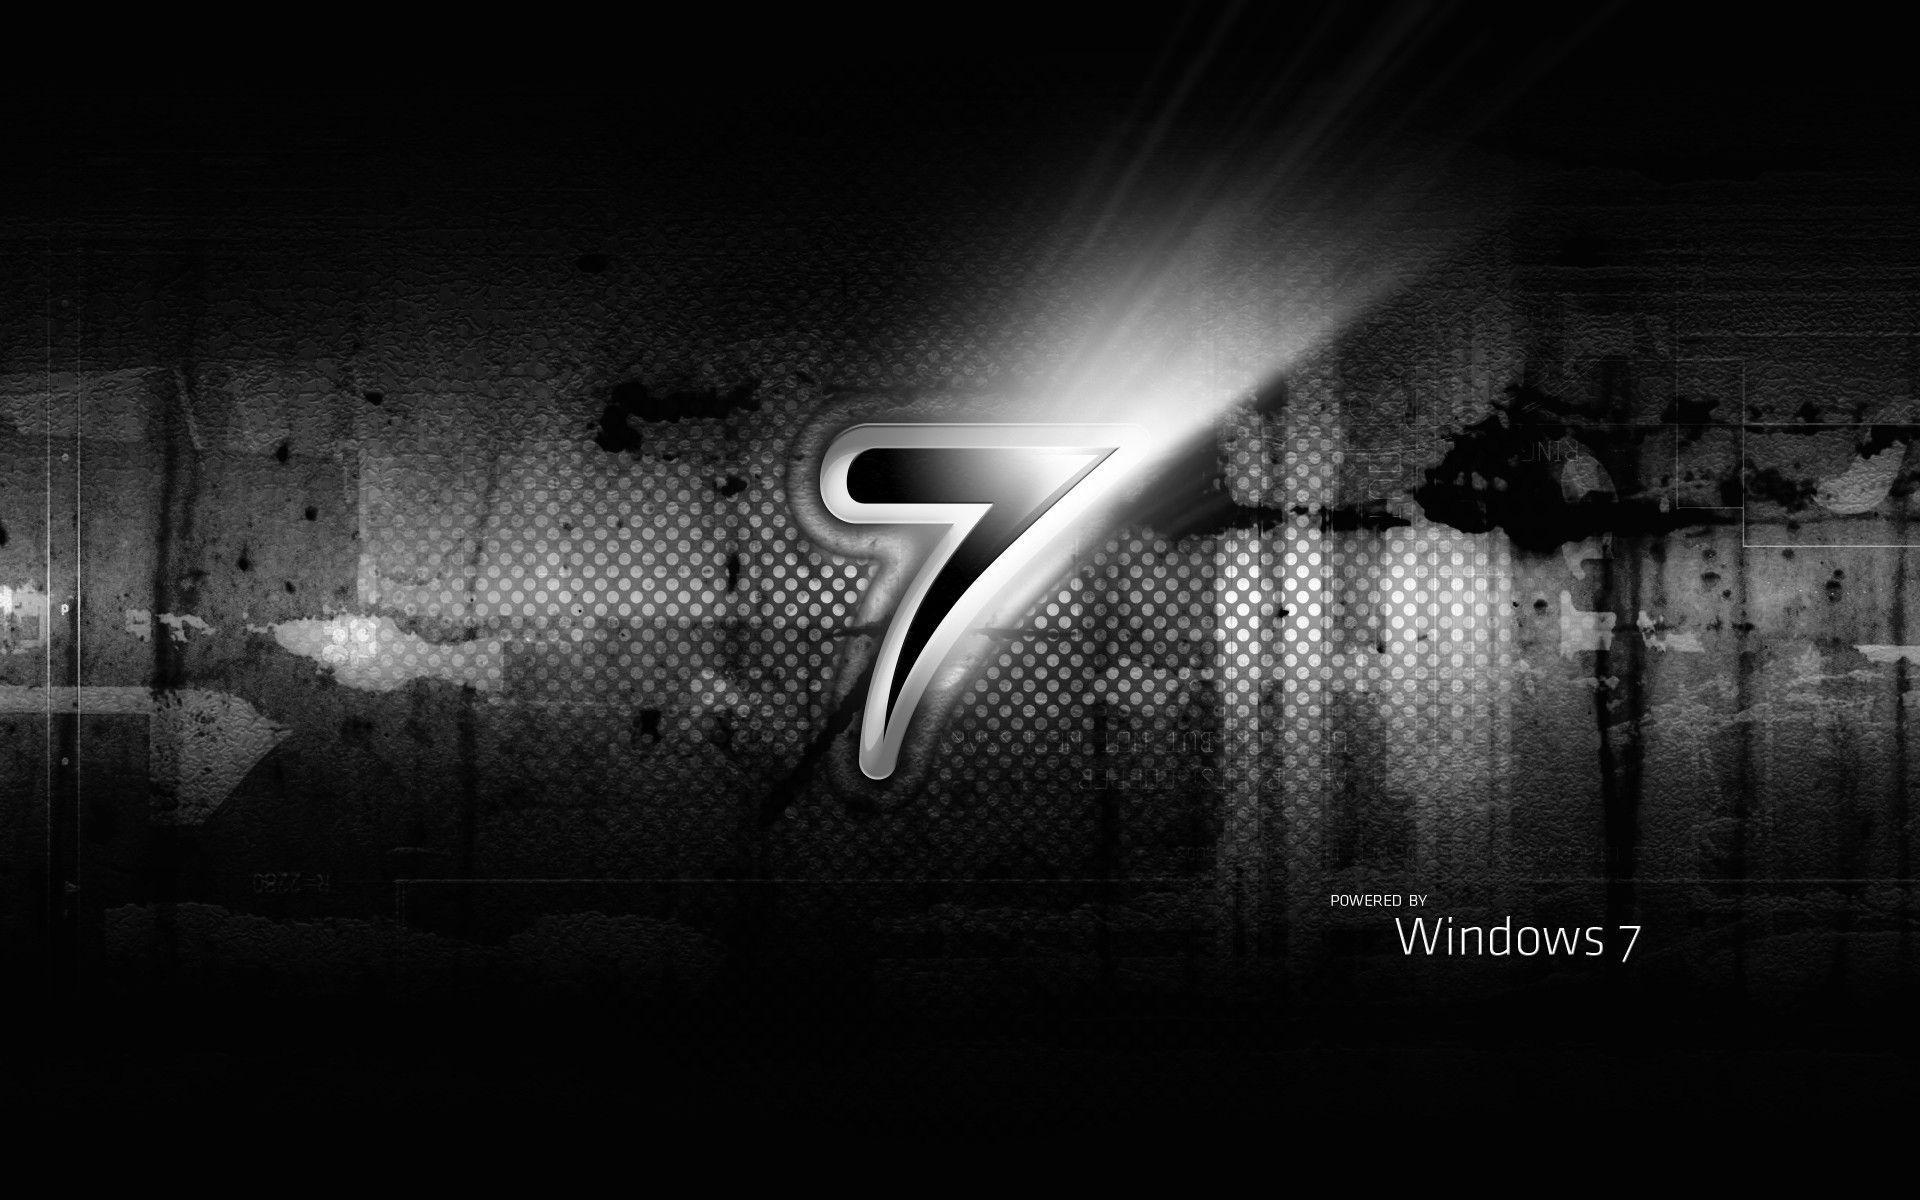 Windows 7 HD Wallpaper. TanukinoSippo